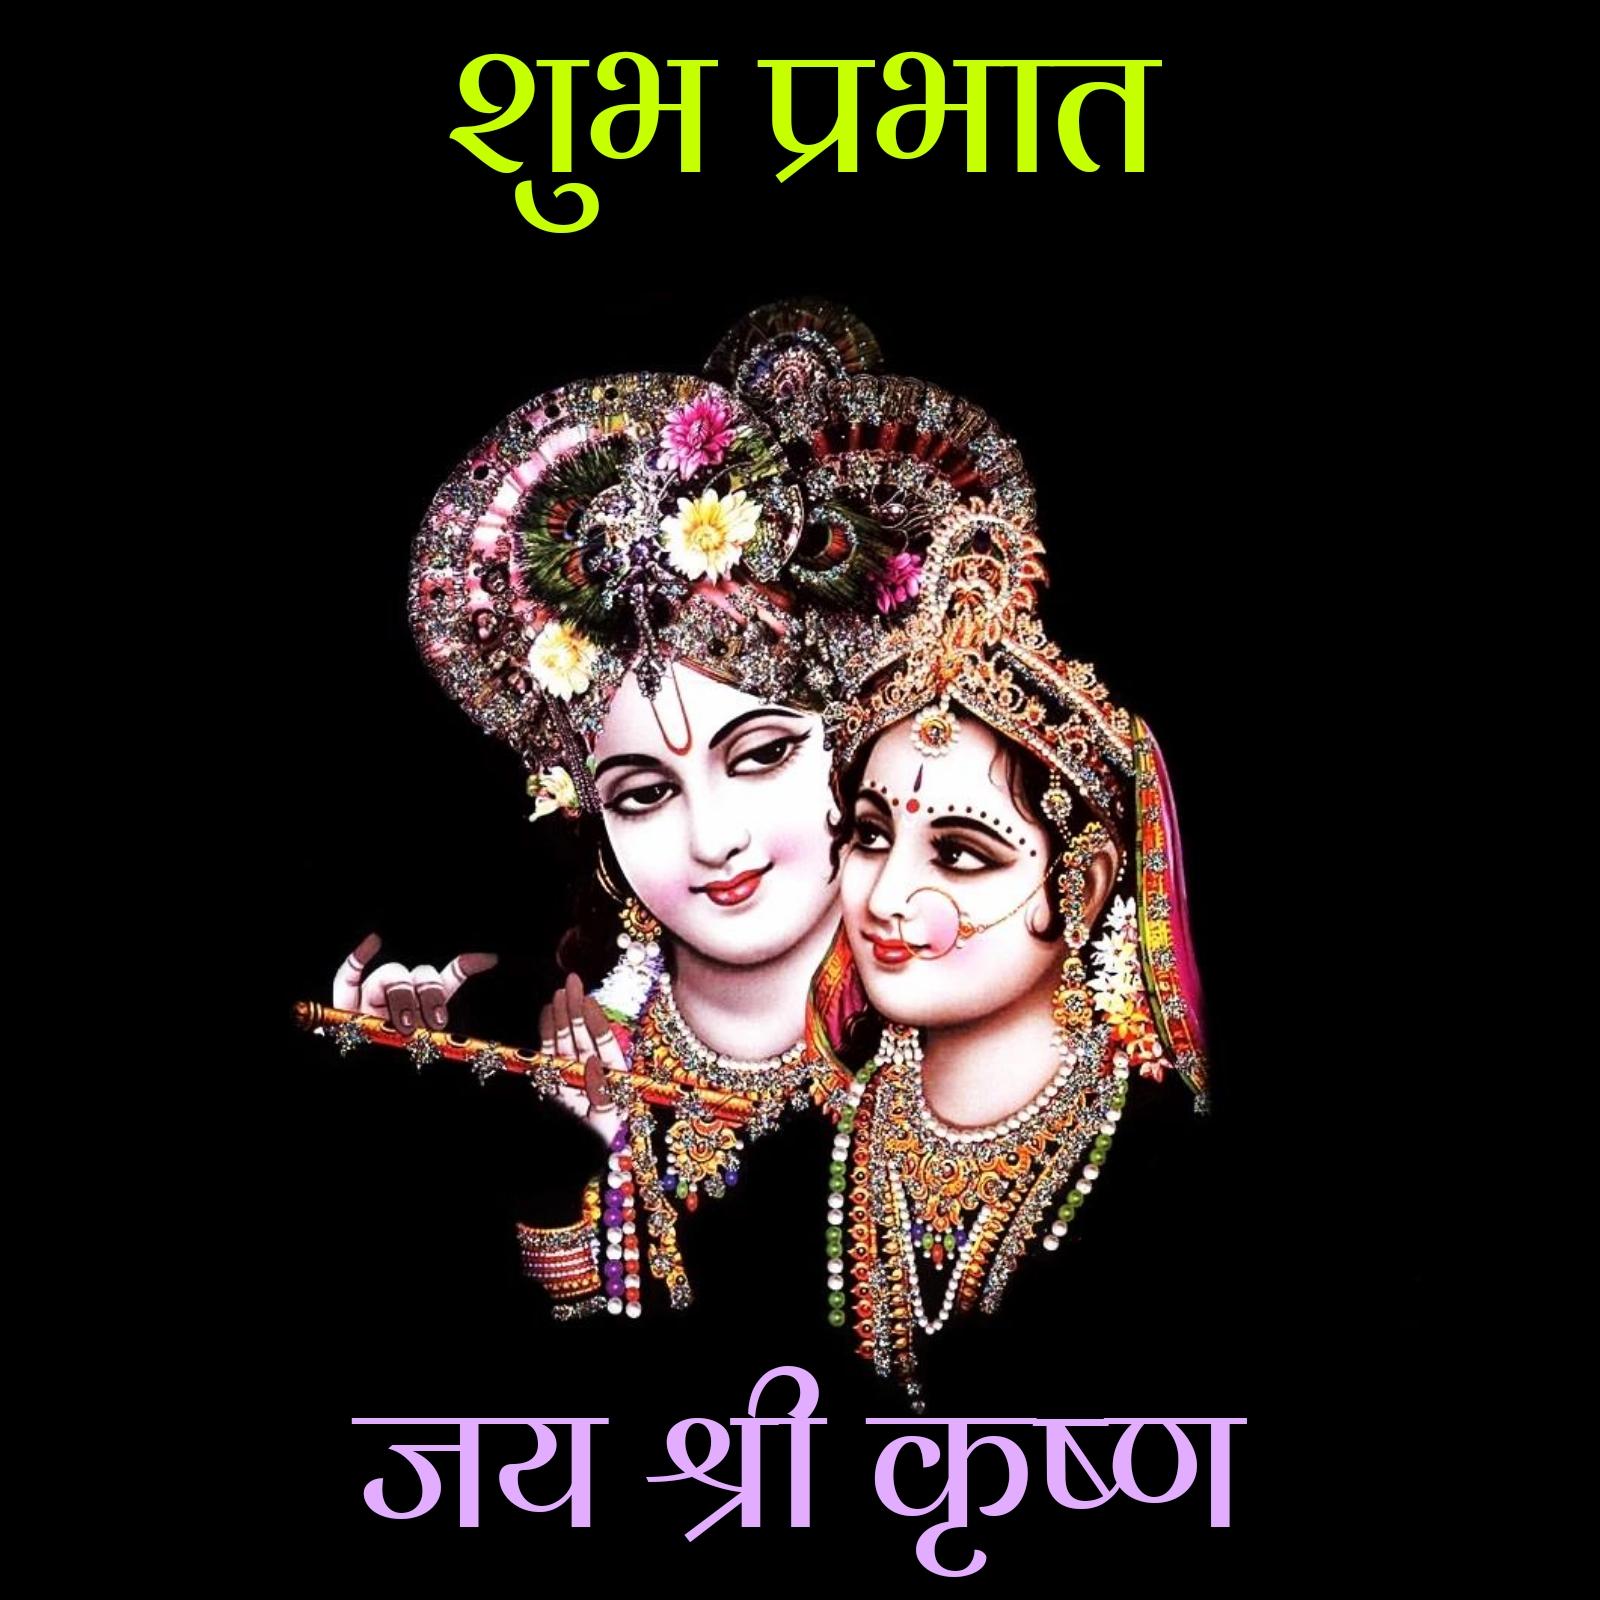 Lord Krishna Good Morning Images - ShayariMaza